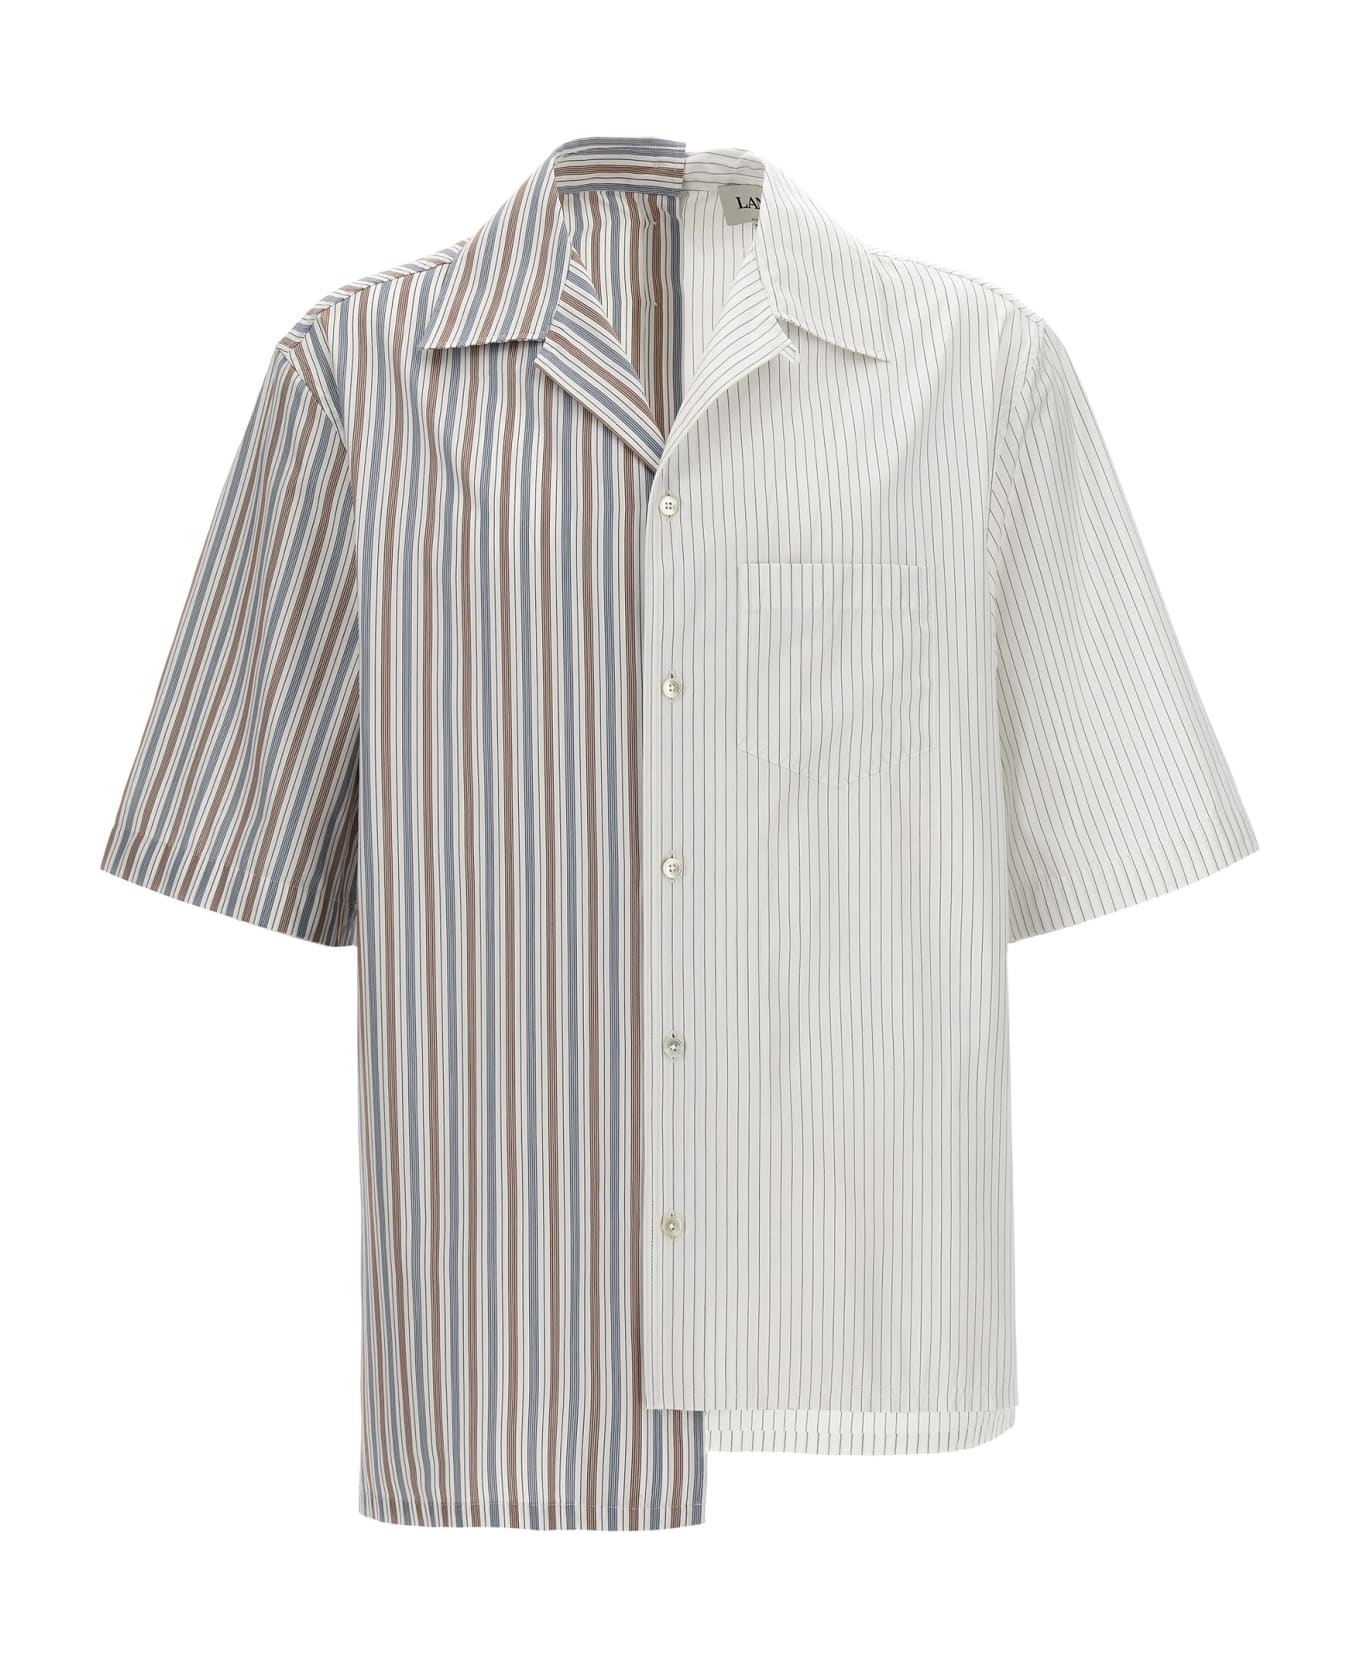 Lanvin Asymmetric Striped Shirt - Multicolor シャツ